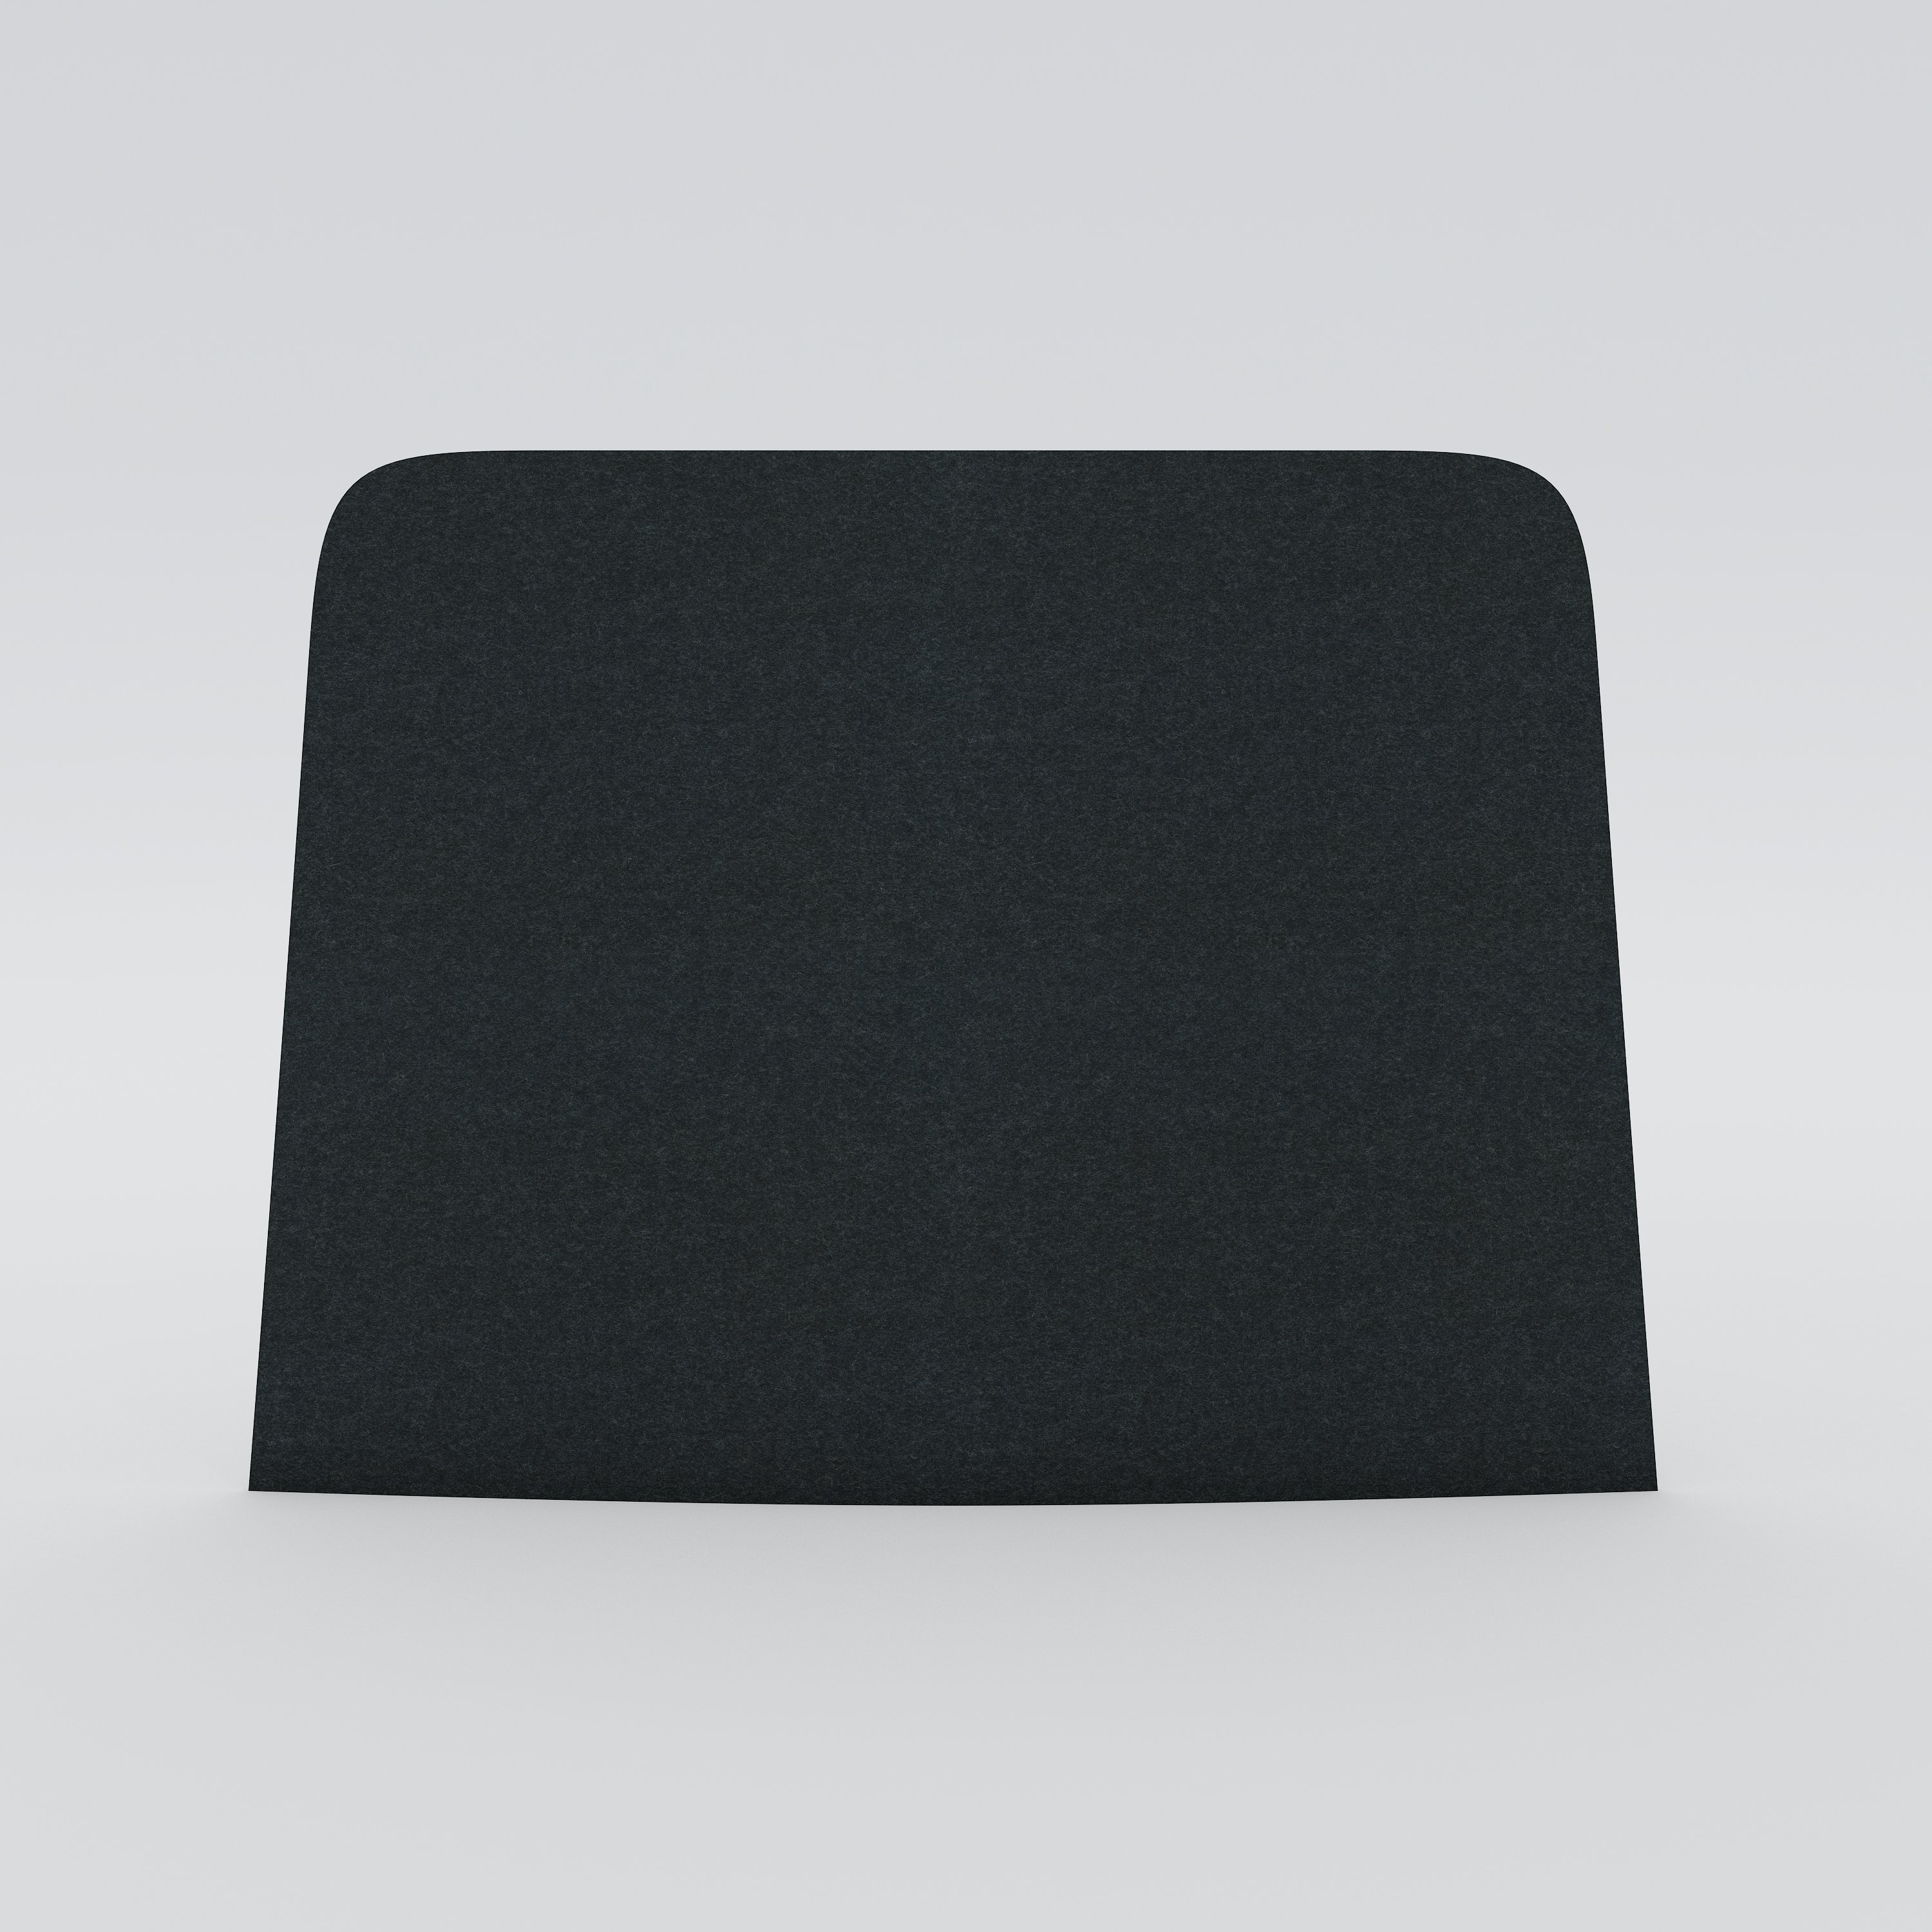 Table screen Ease, dark gray felt upholstery, 600x450